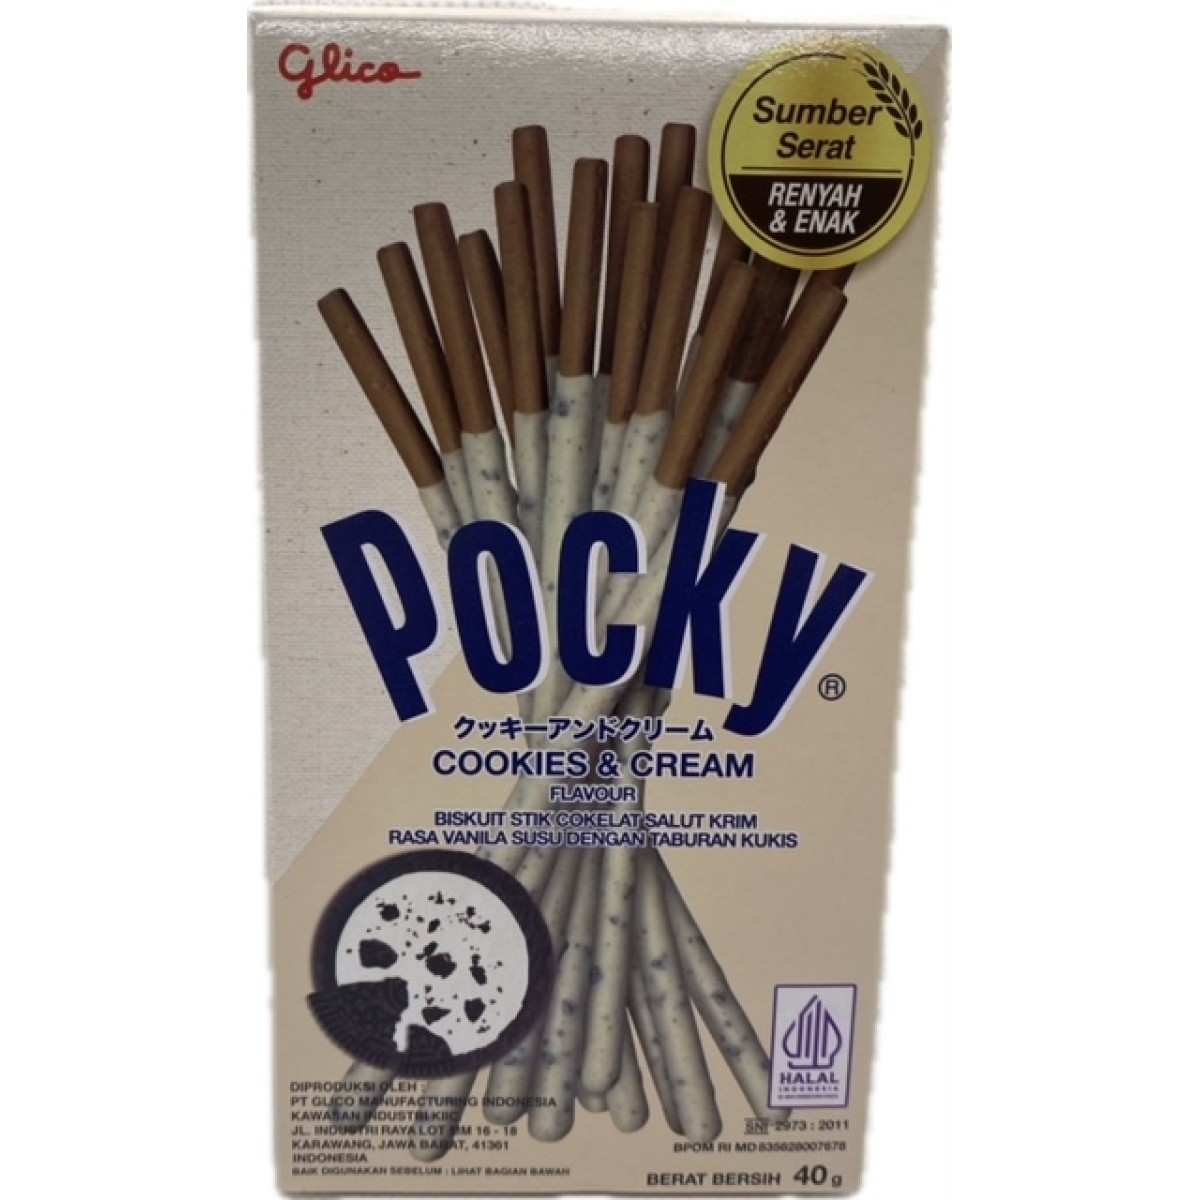 Pocky cookie cream